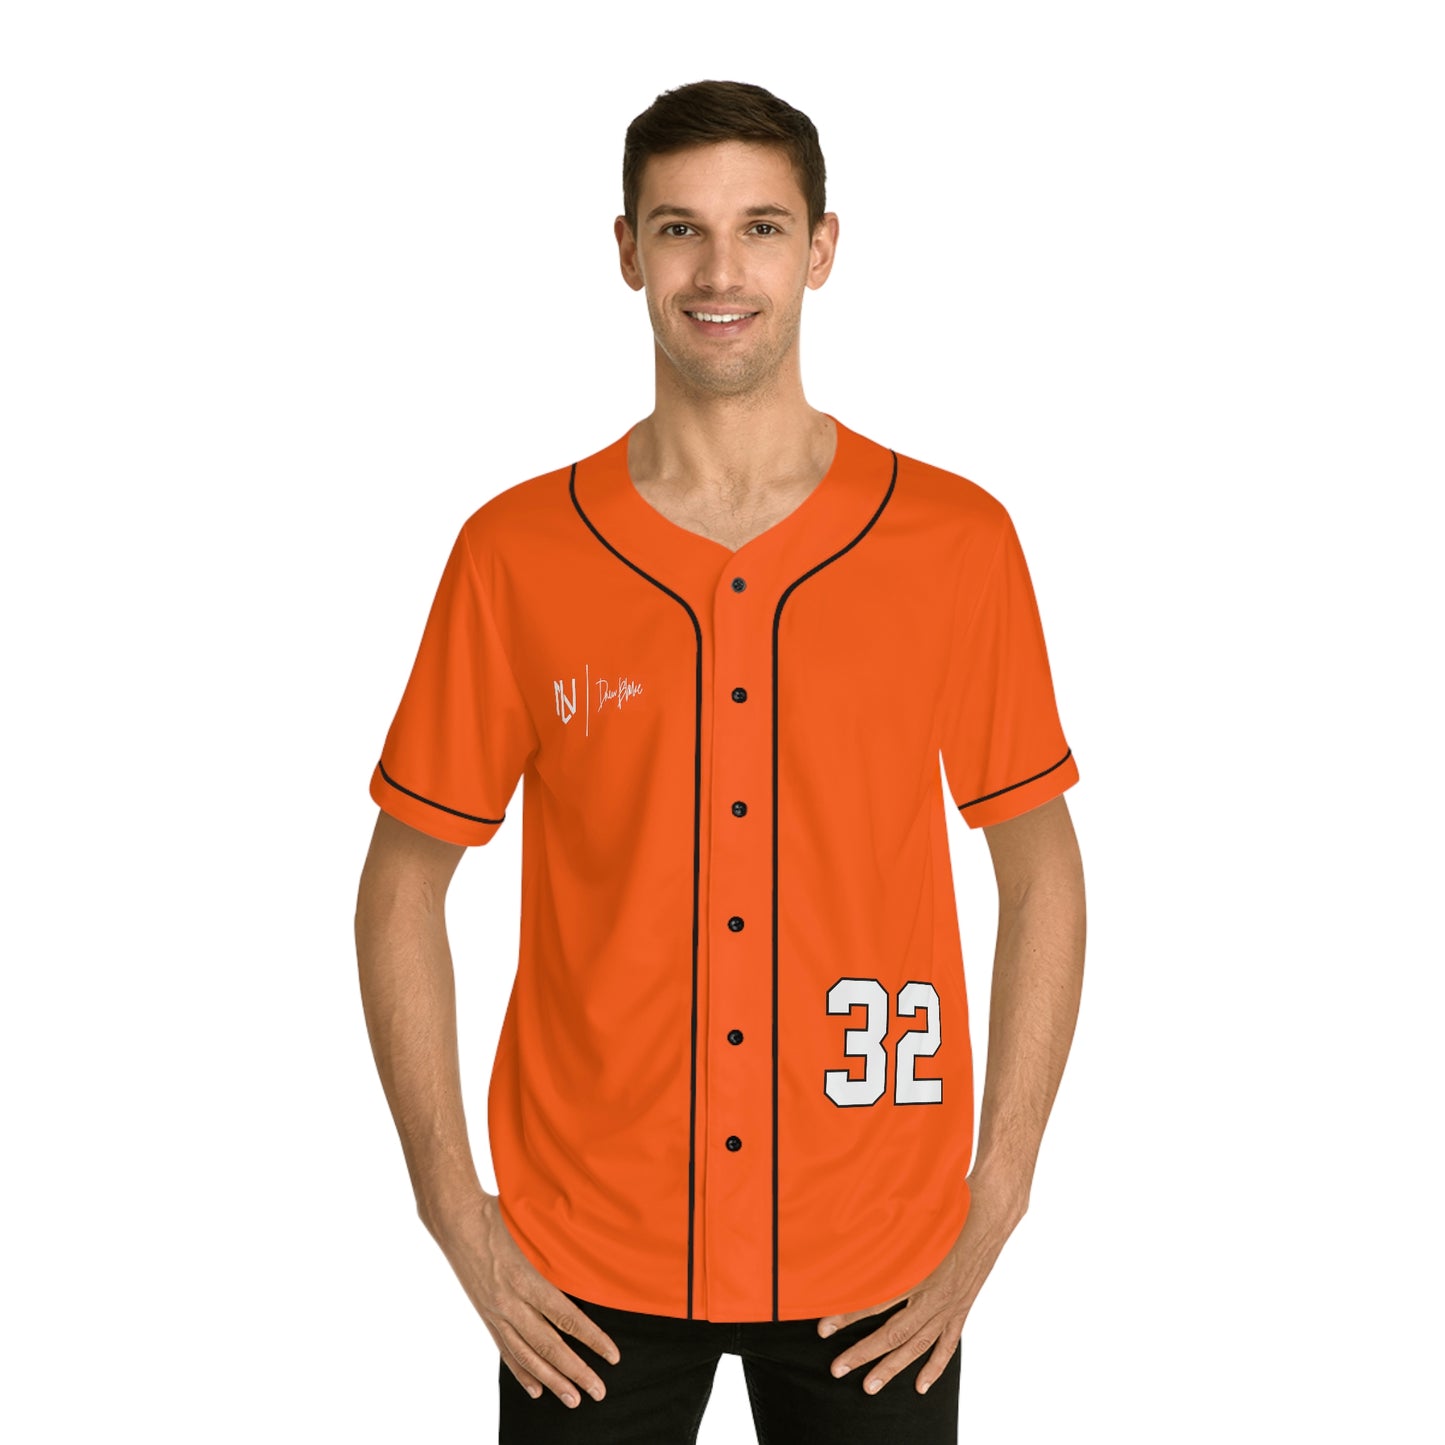 Drew Blake Baseball Jersey (Orange)